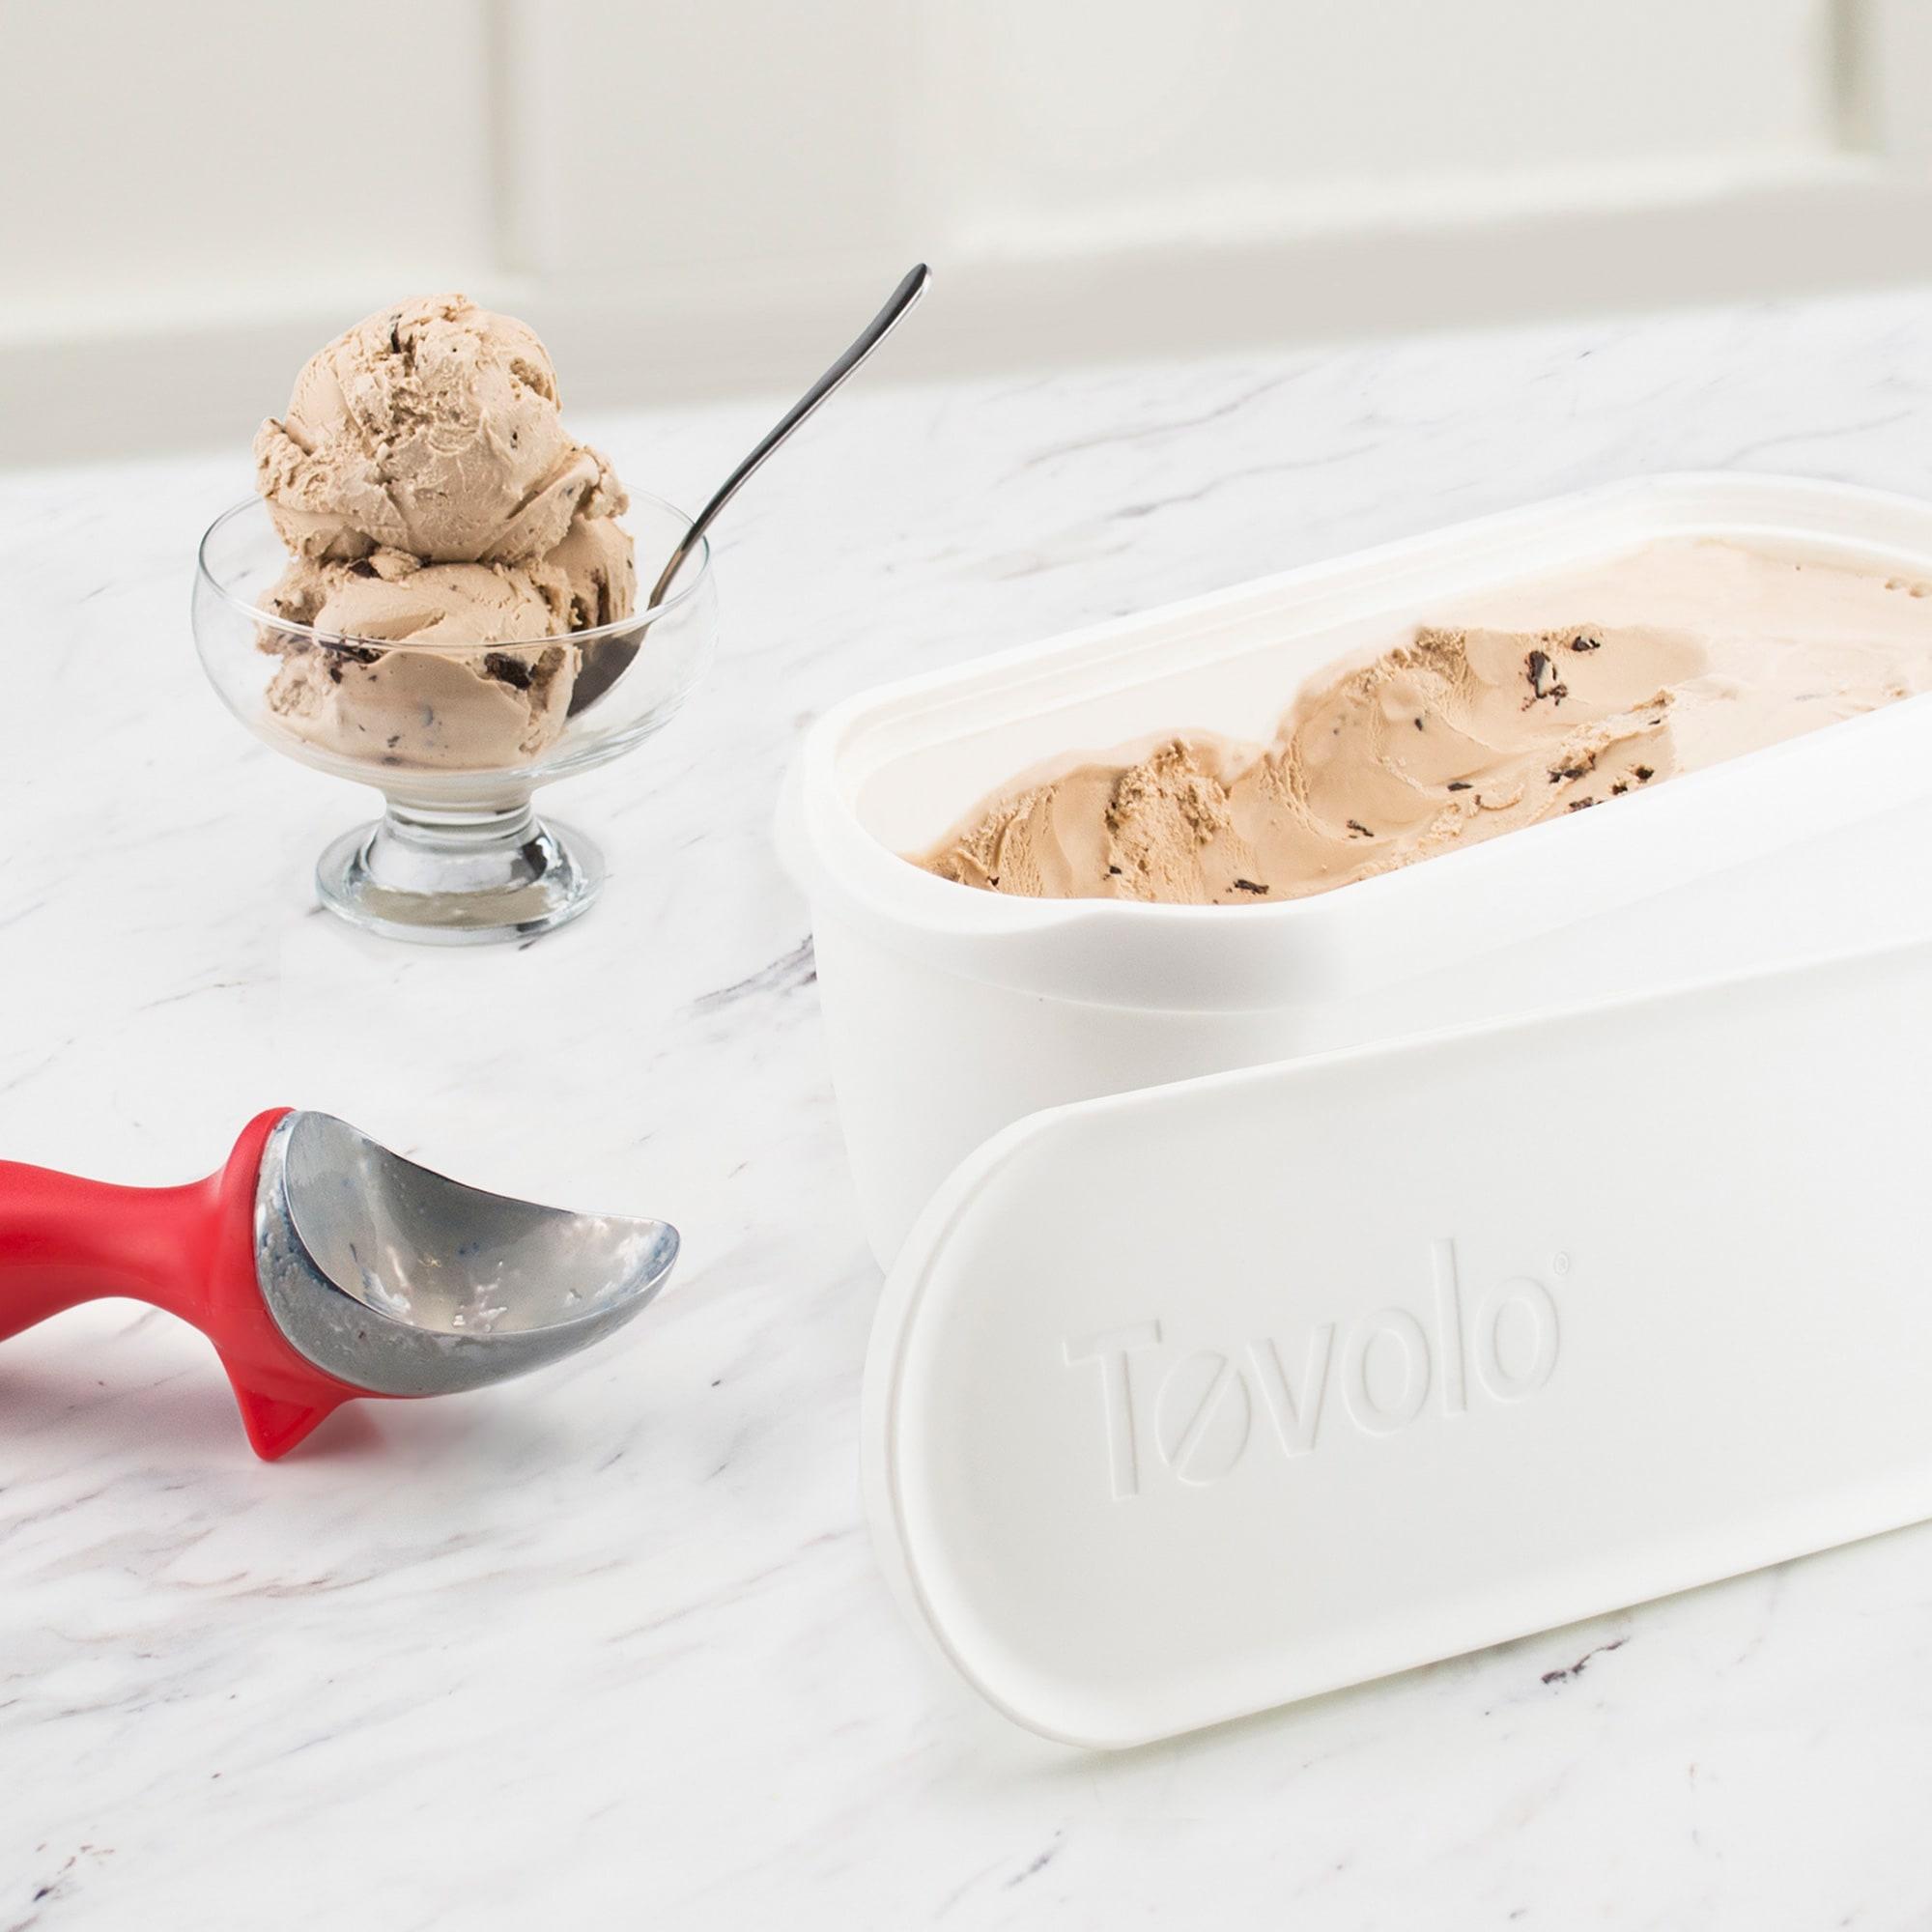 Tovolo Glide-A-Scoop Ice Cream Tub 1.5L White Image 3